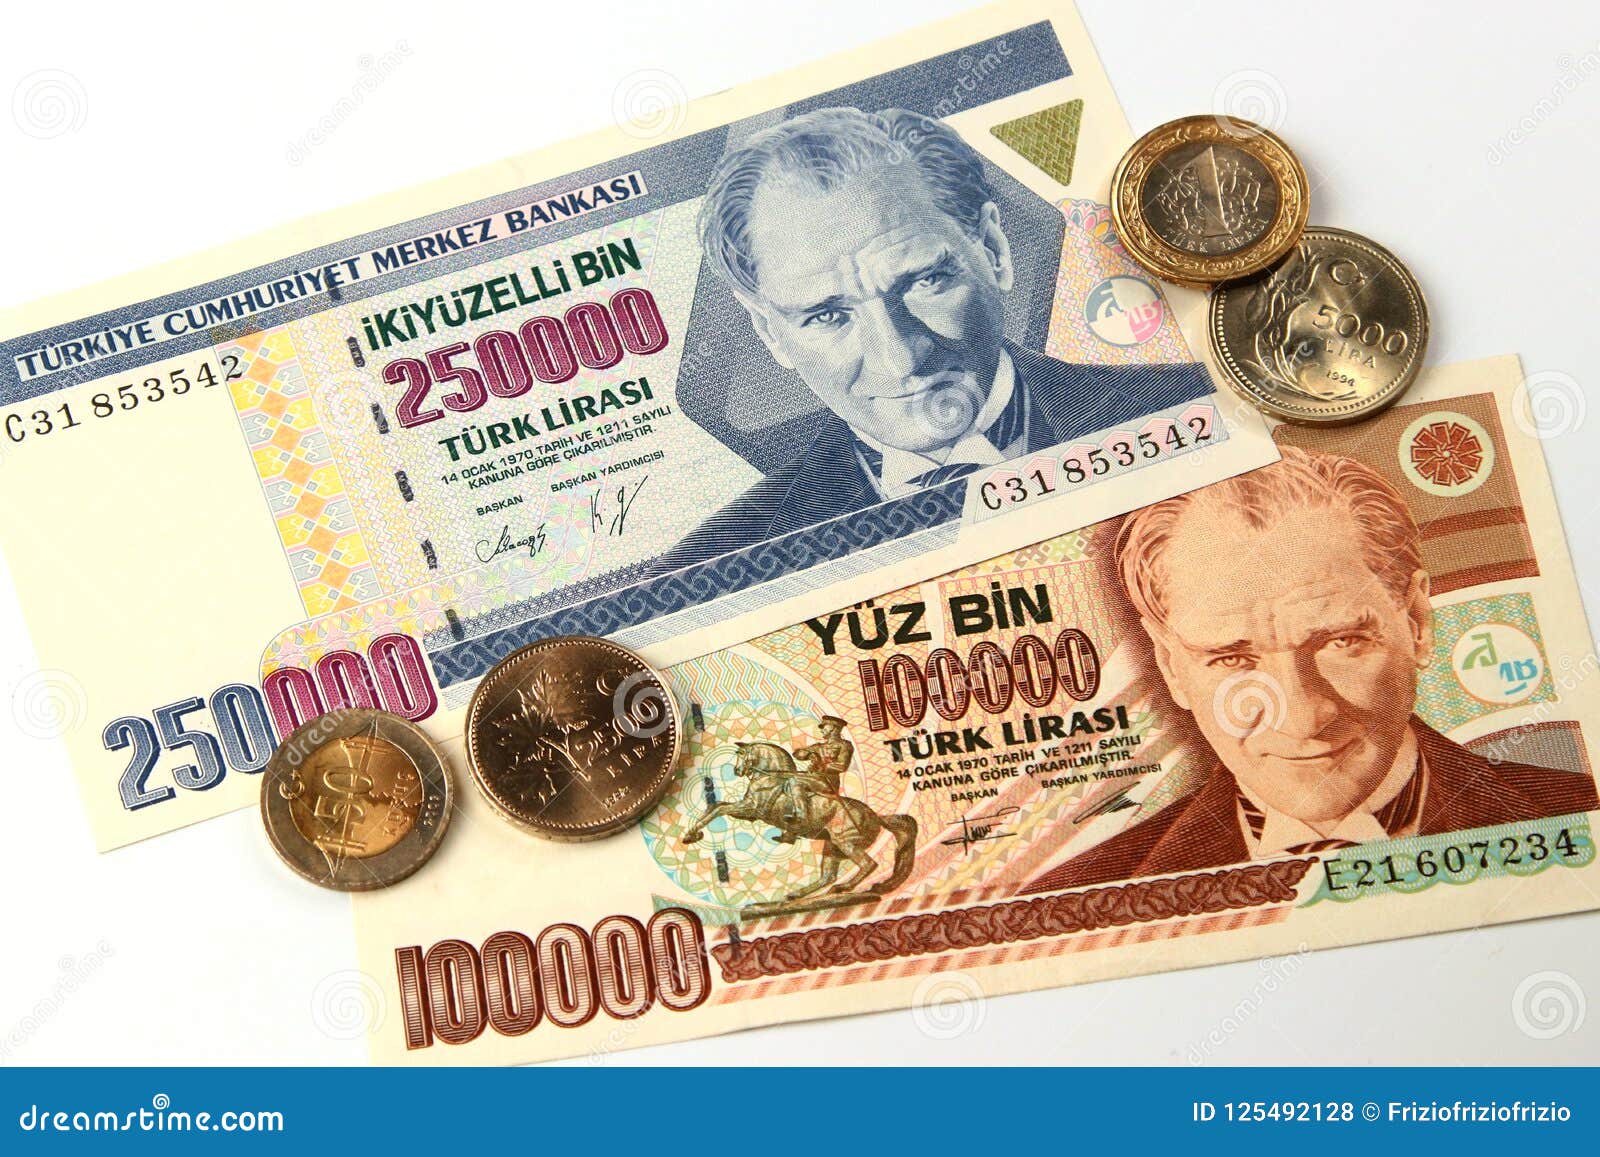 81 доллар в рублях. Как выглядят турецкие деньги.